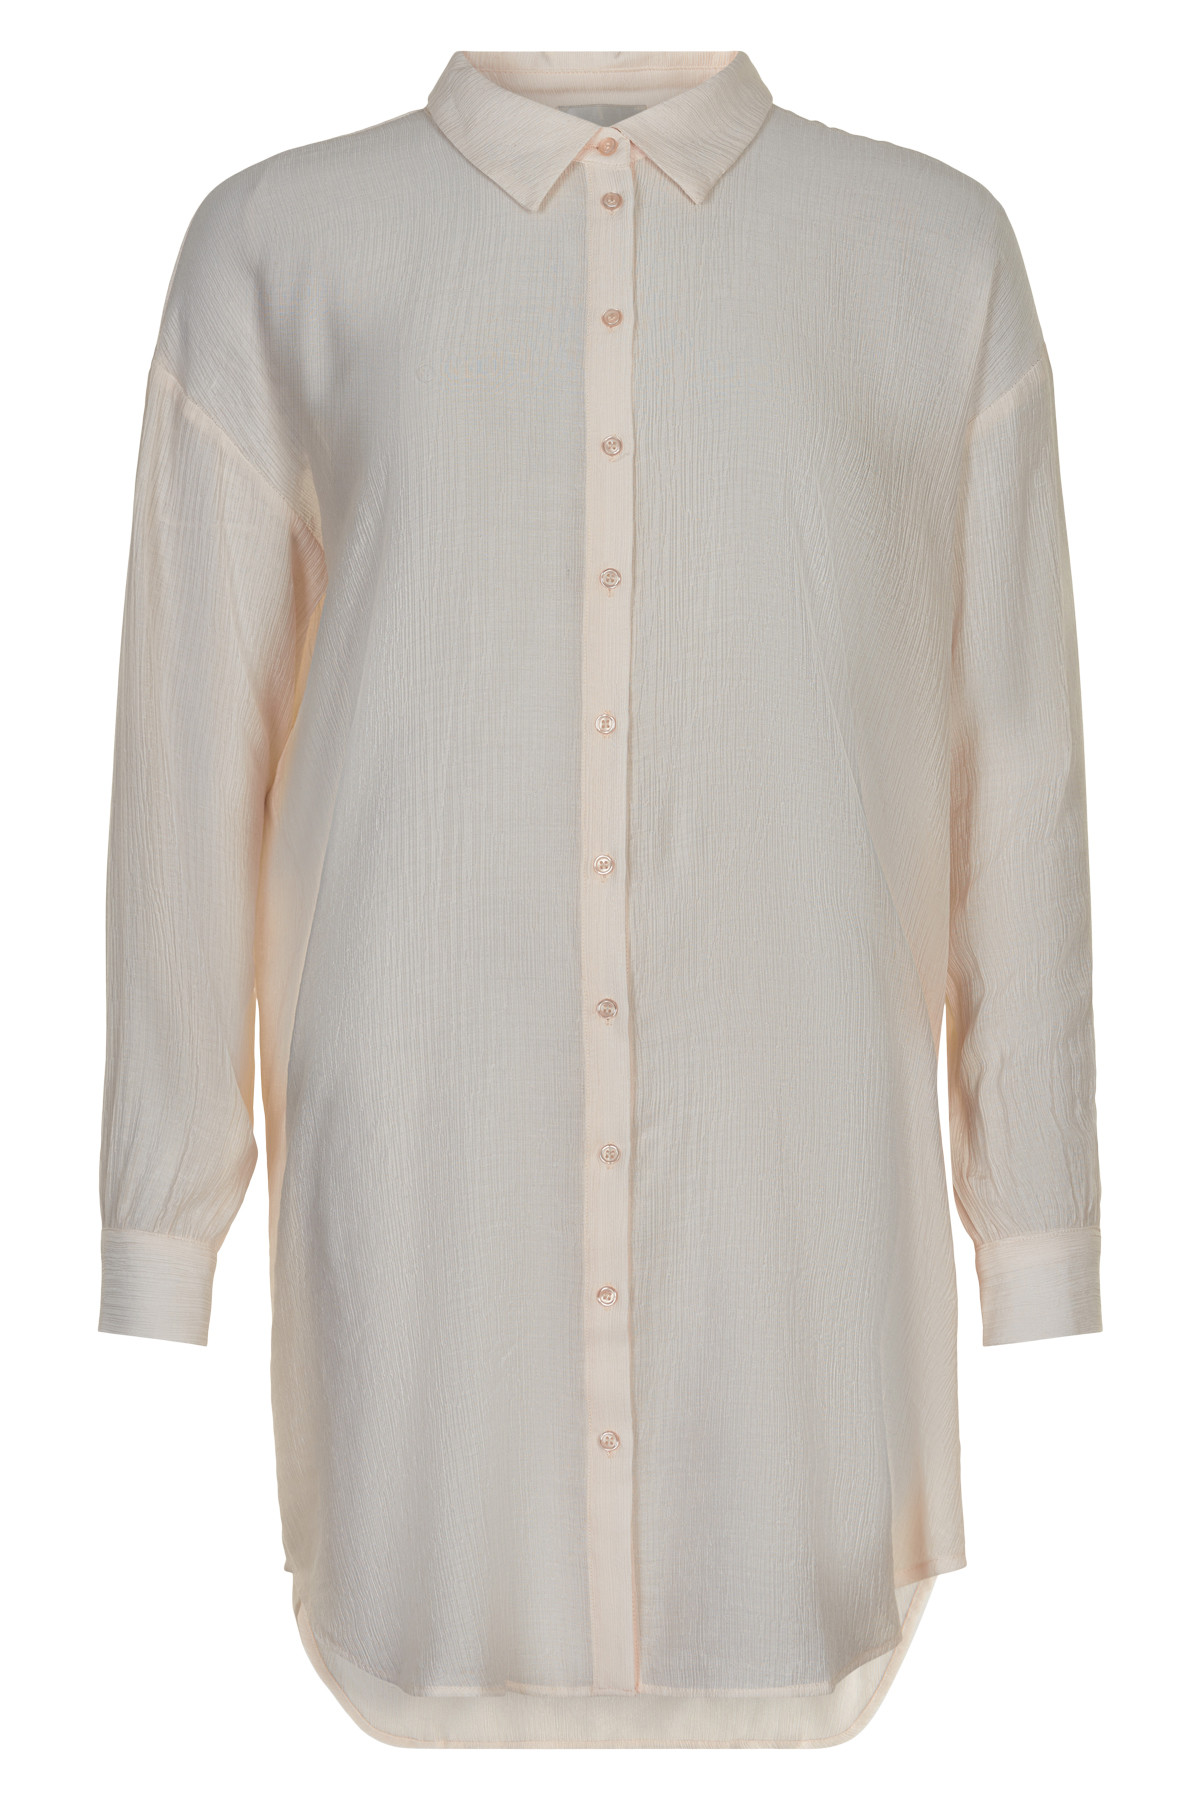 My Essential Wardrobe Alma Lang Skjorte, Farve: Hvid, Størrelse: 34, Dame